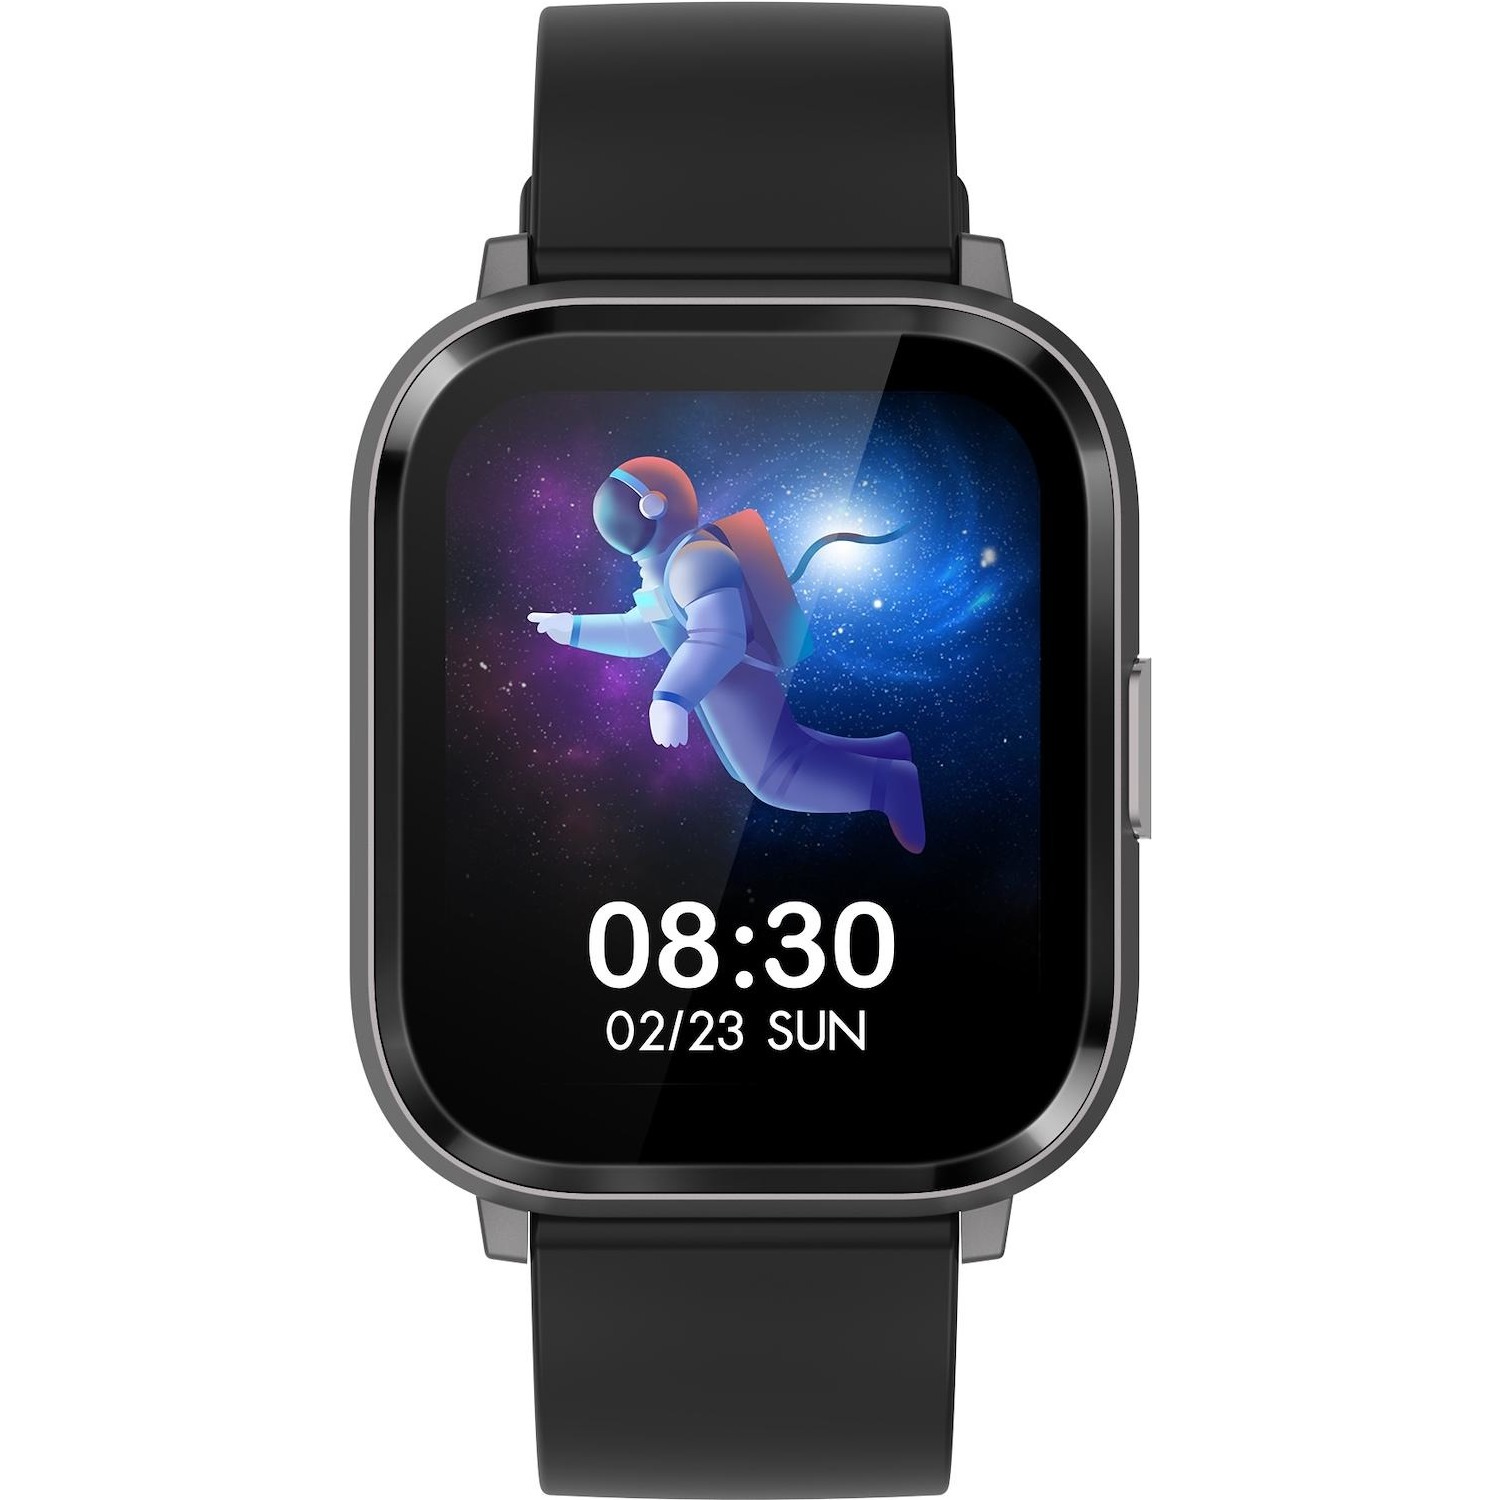 Immagine per Smartwatch 257 fitness tracker SW750 da DIMOStore